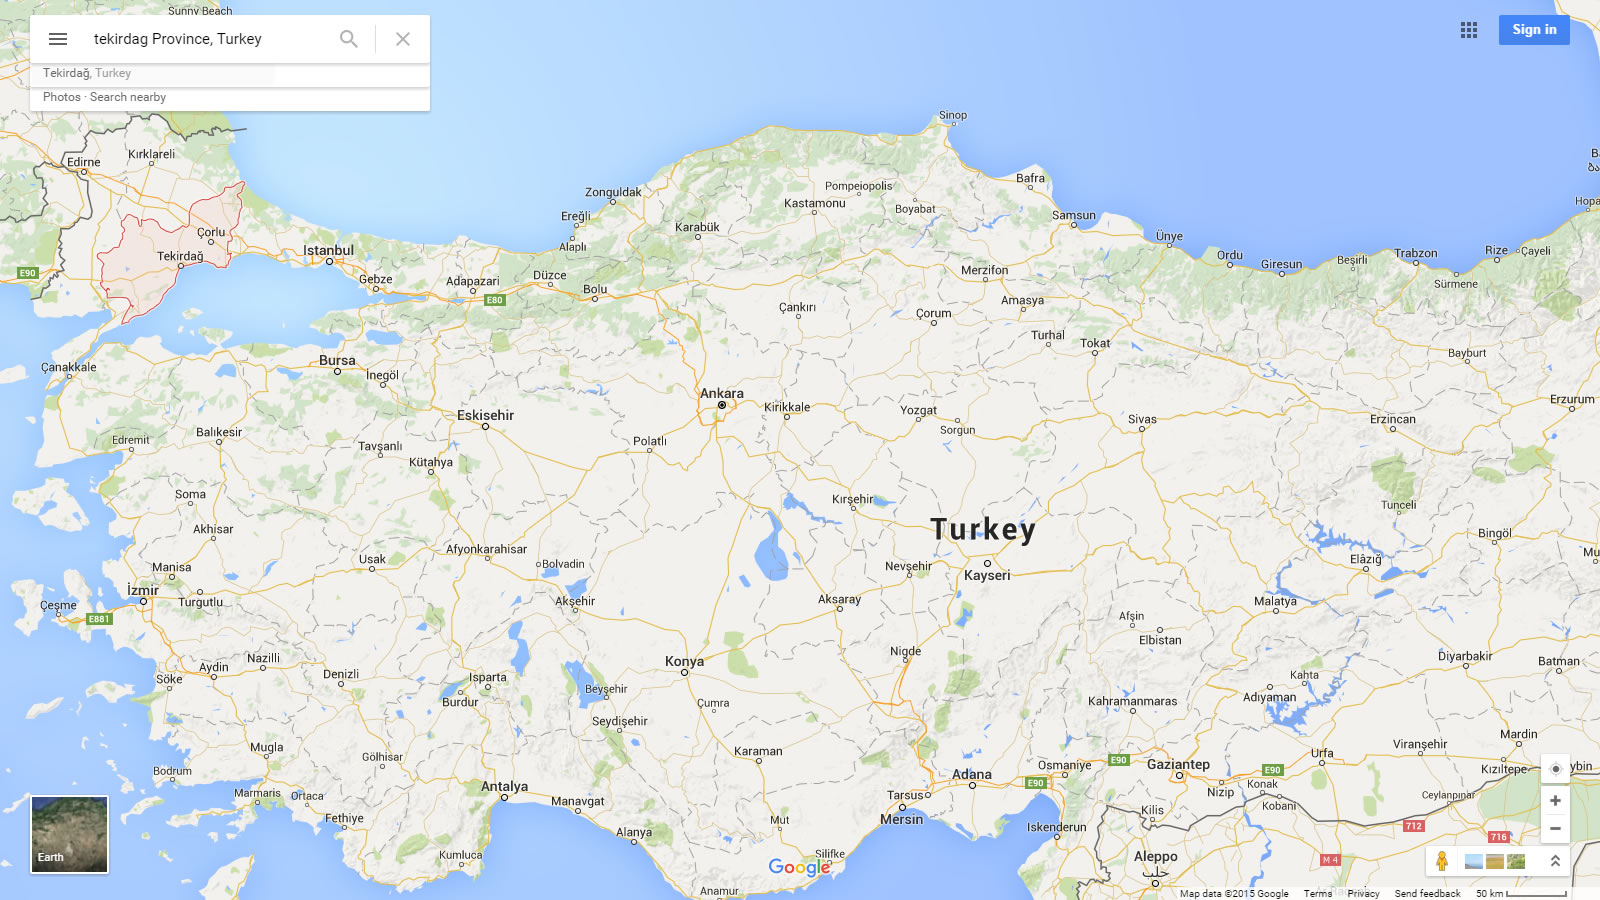 tekirdag karte turkei